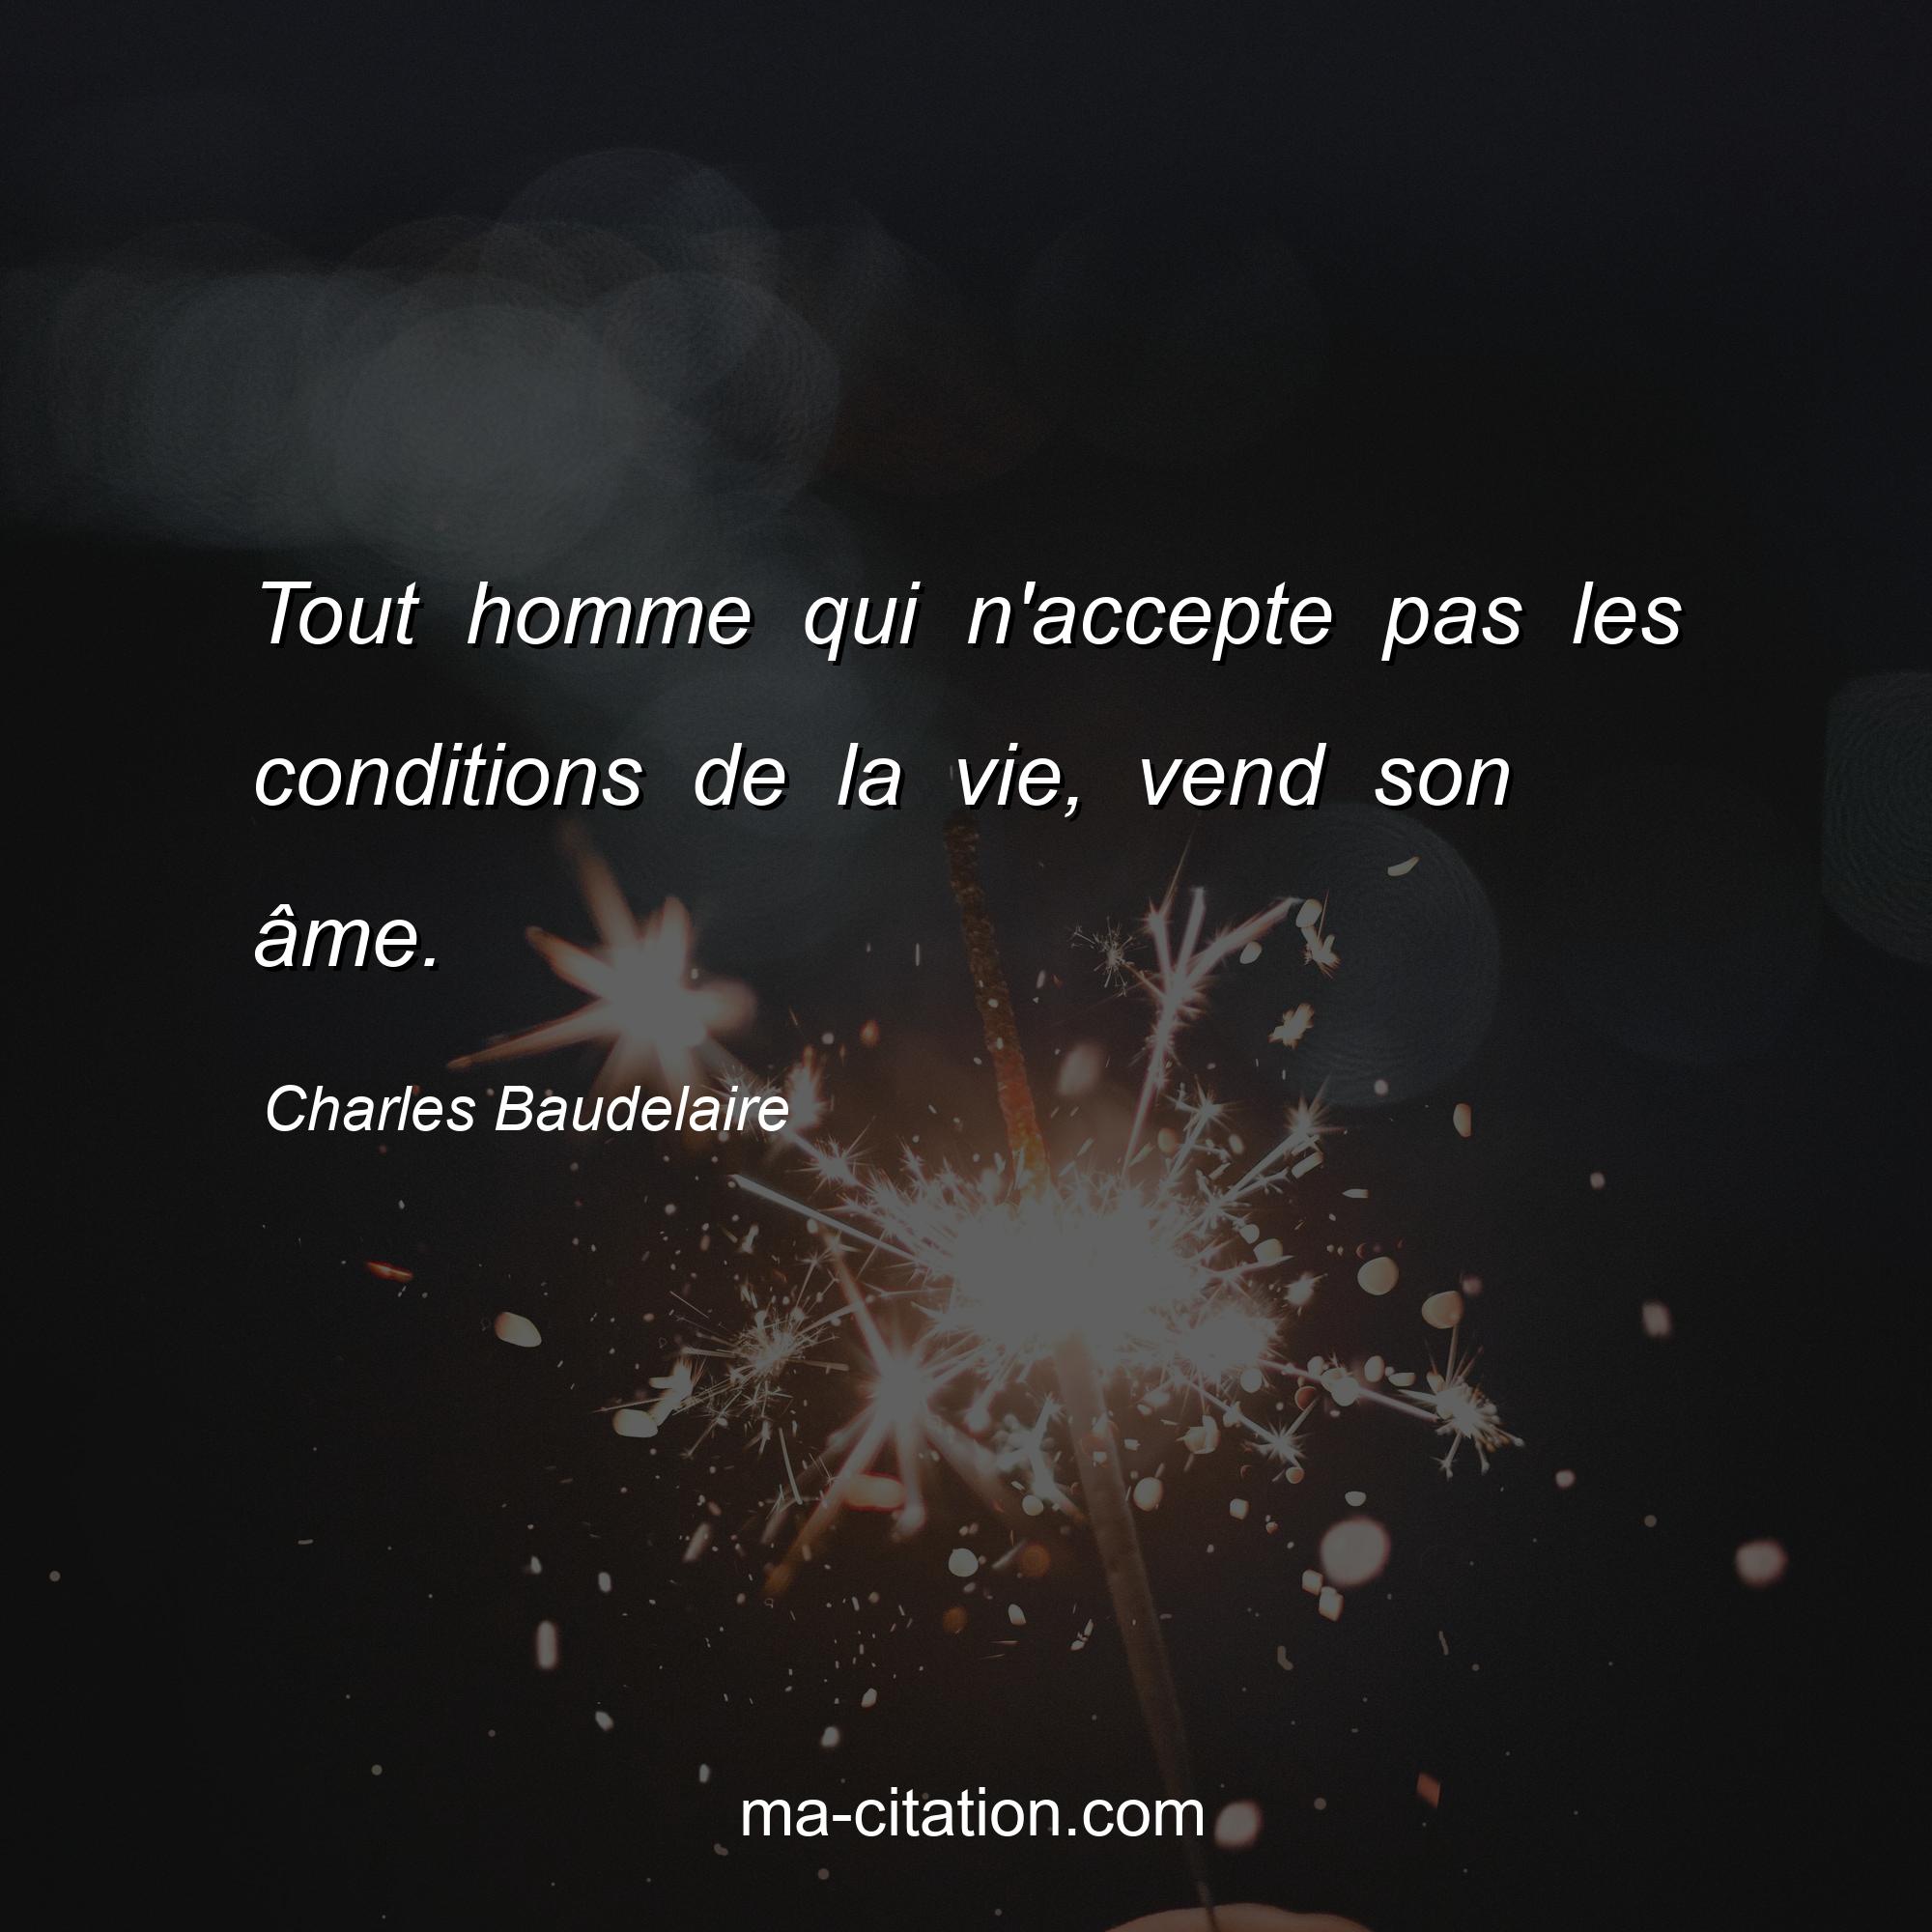 Charles Baudelaire : Tout homme qui n'accepte pas les conditions de la vie, vend son âme.